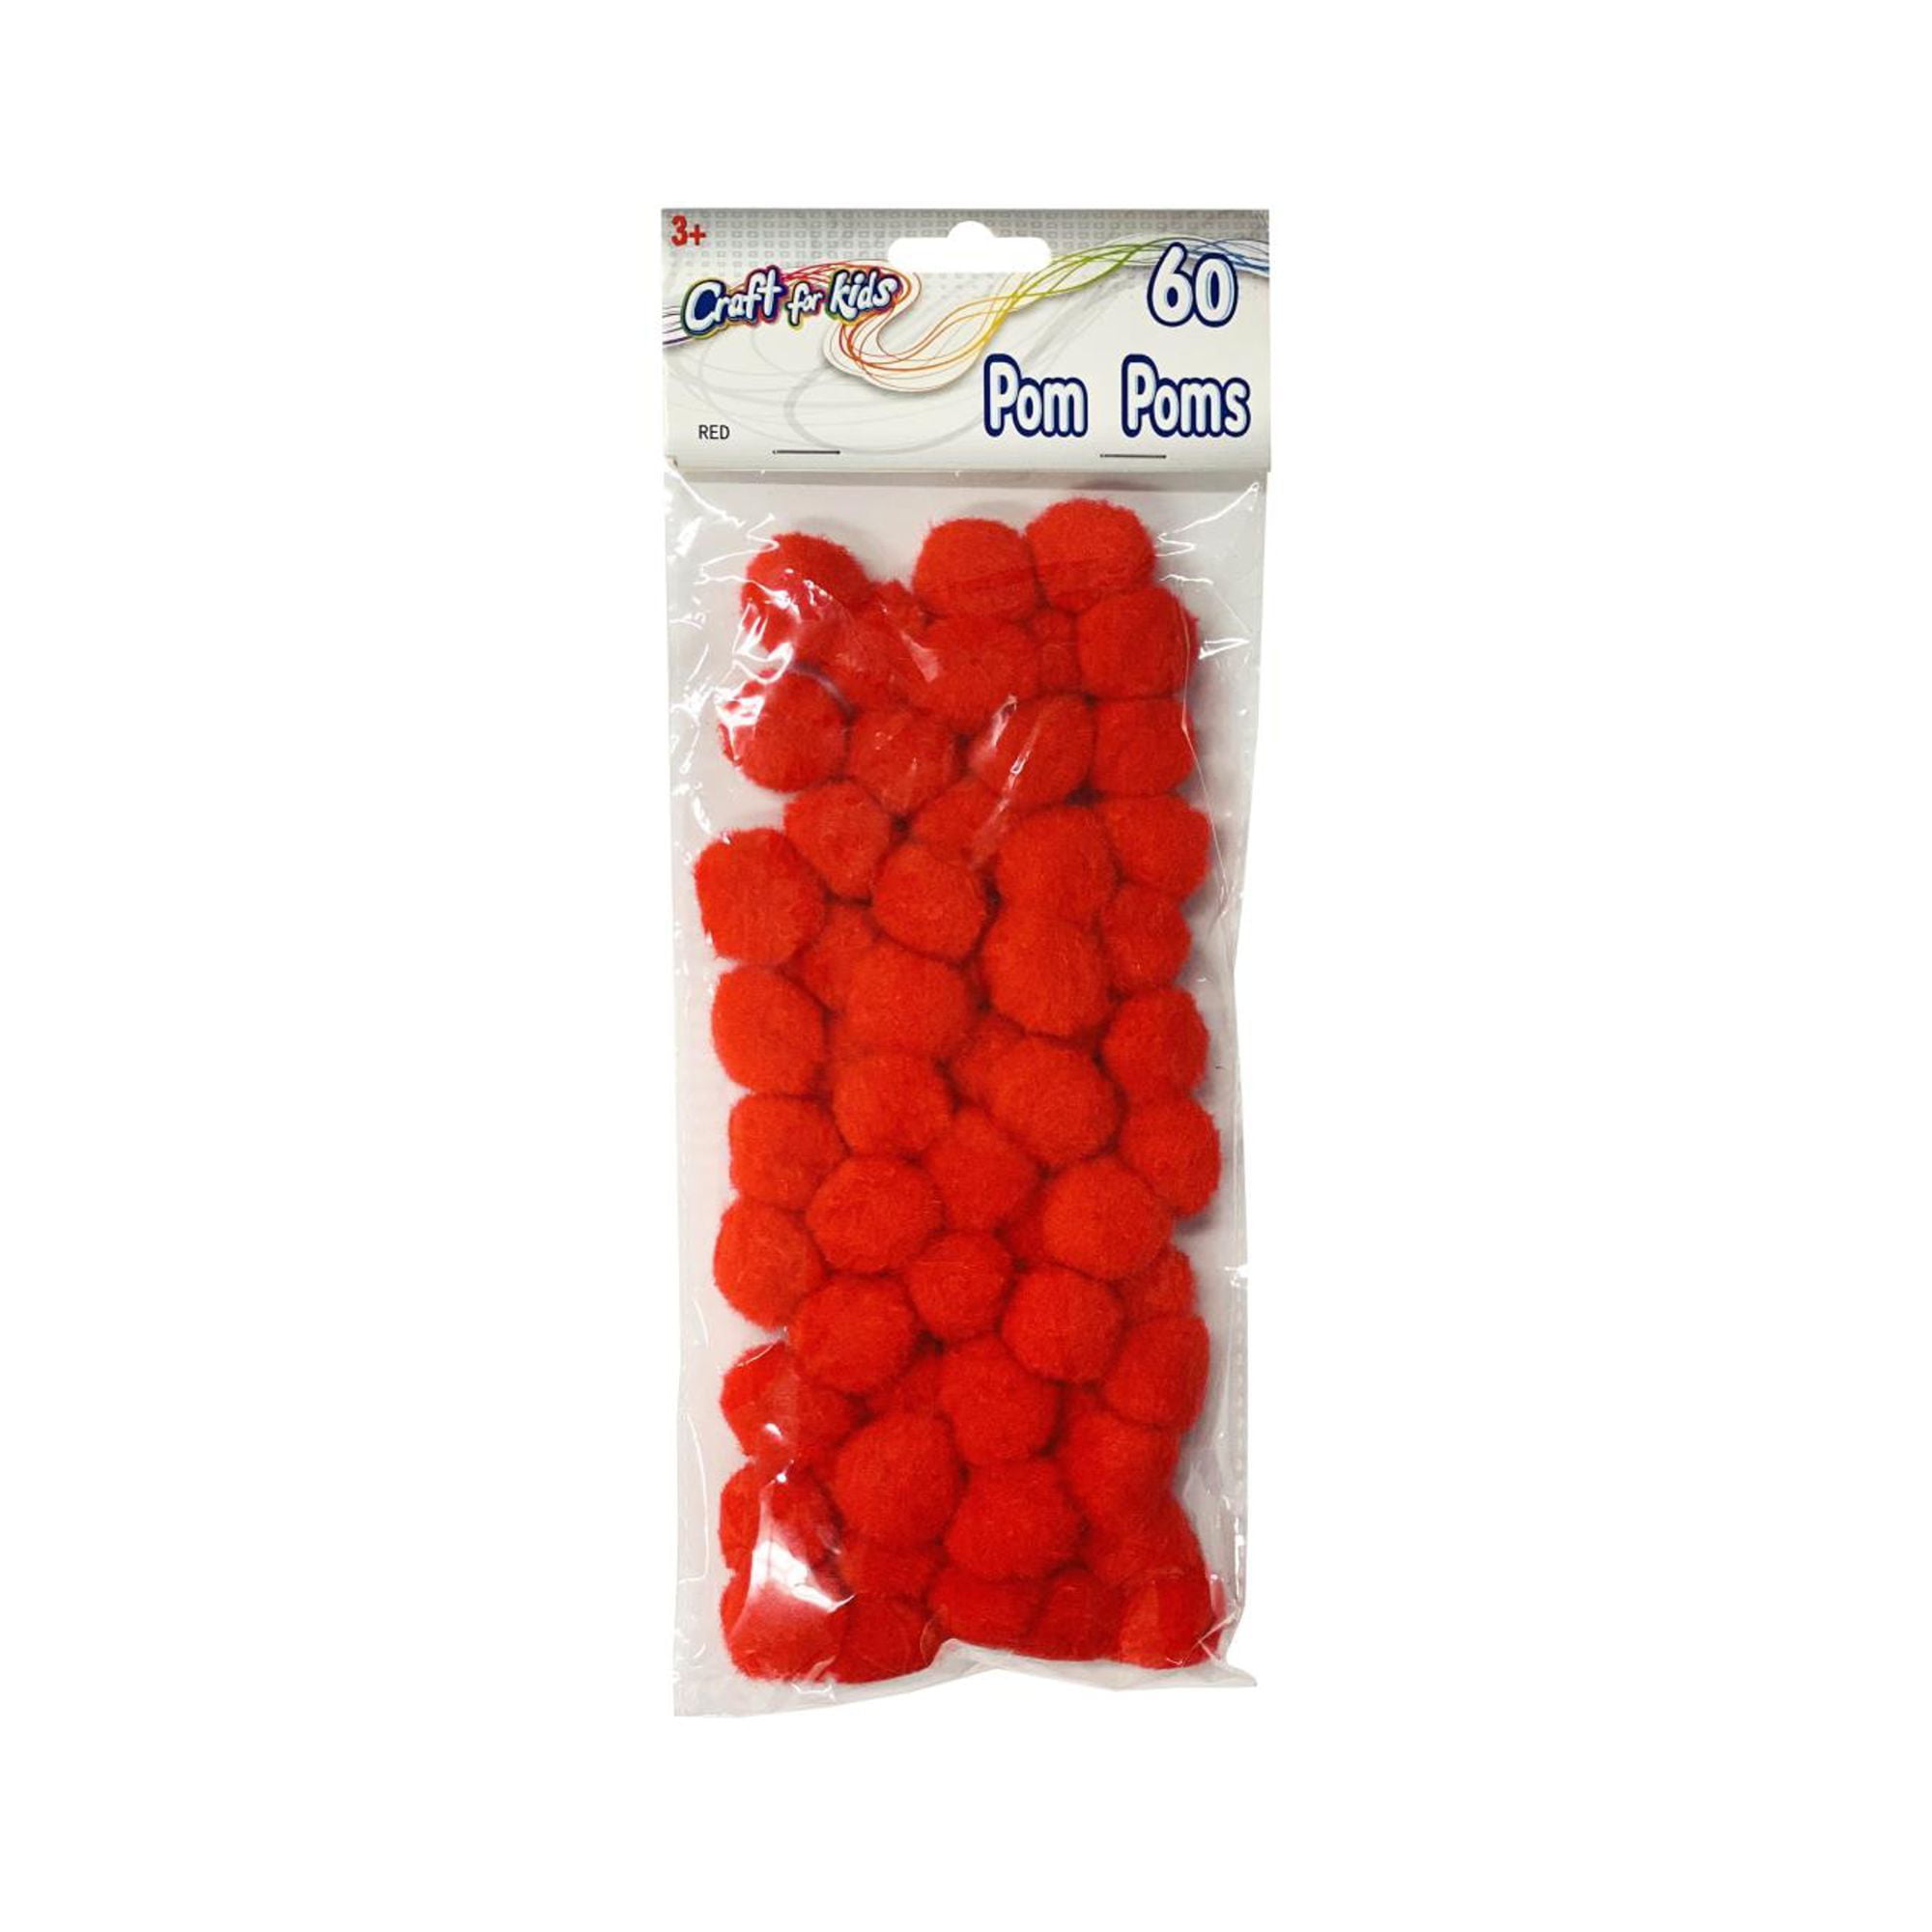 Christmas Poms Poms | Red Pom Poms - 25mm - 60 Pieces/Pkg. - Walmart.com